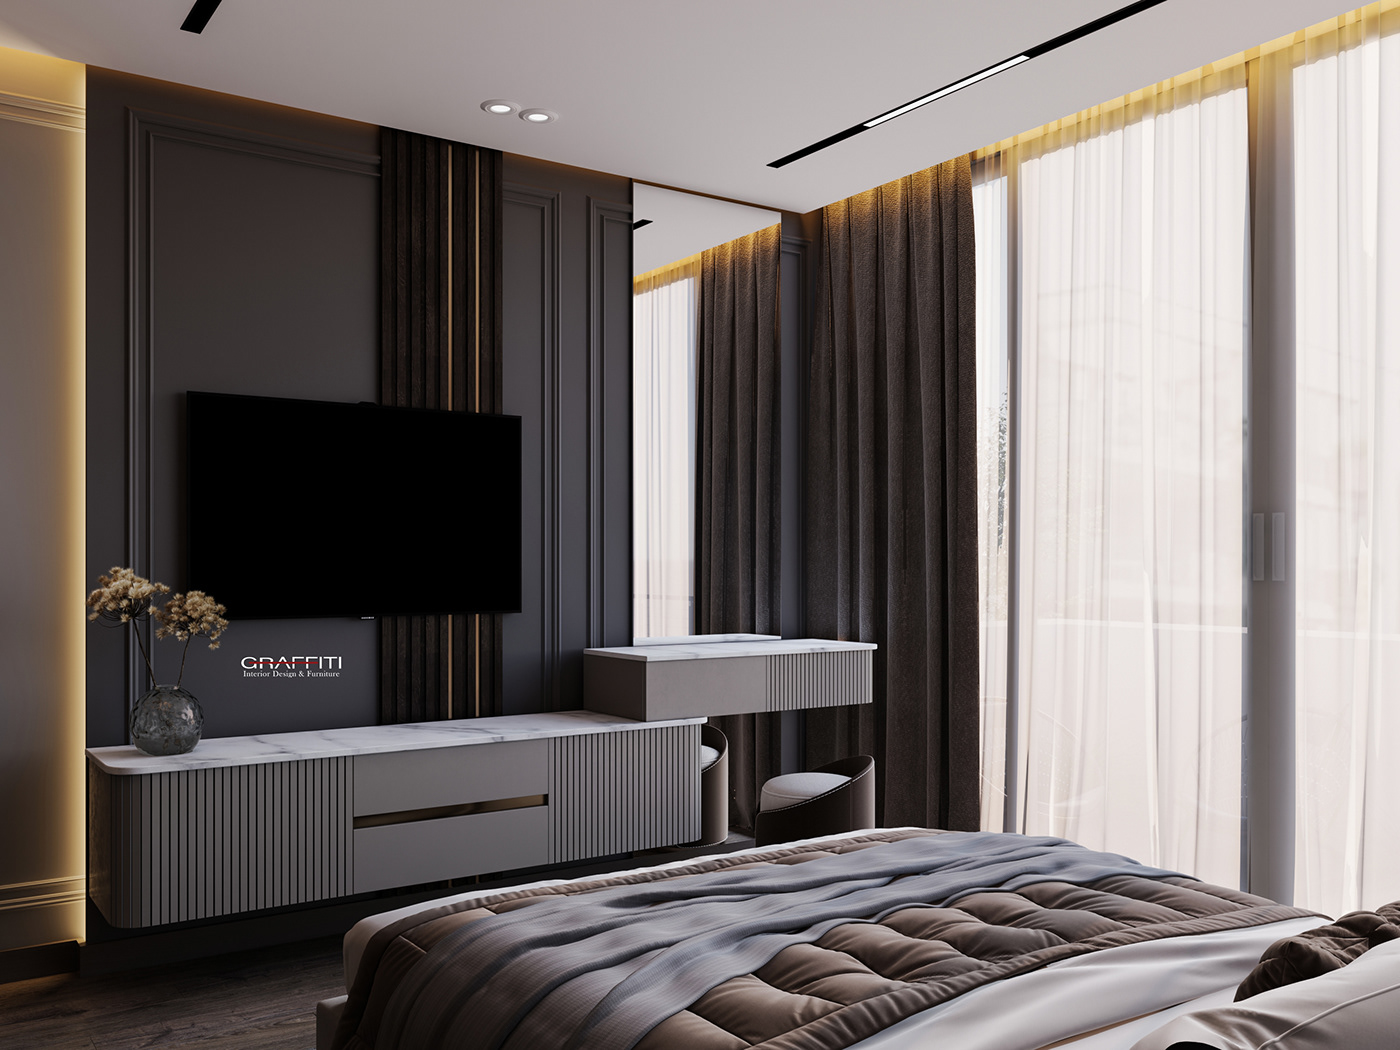 luxury modern interior design  visualization bedroom bedroom design Interior dark design hotel